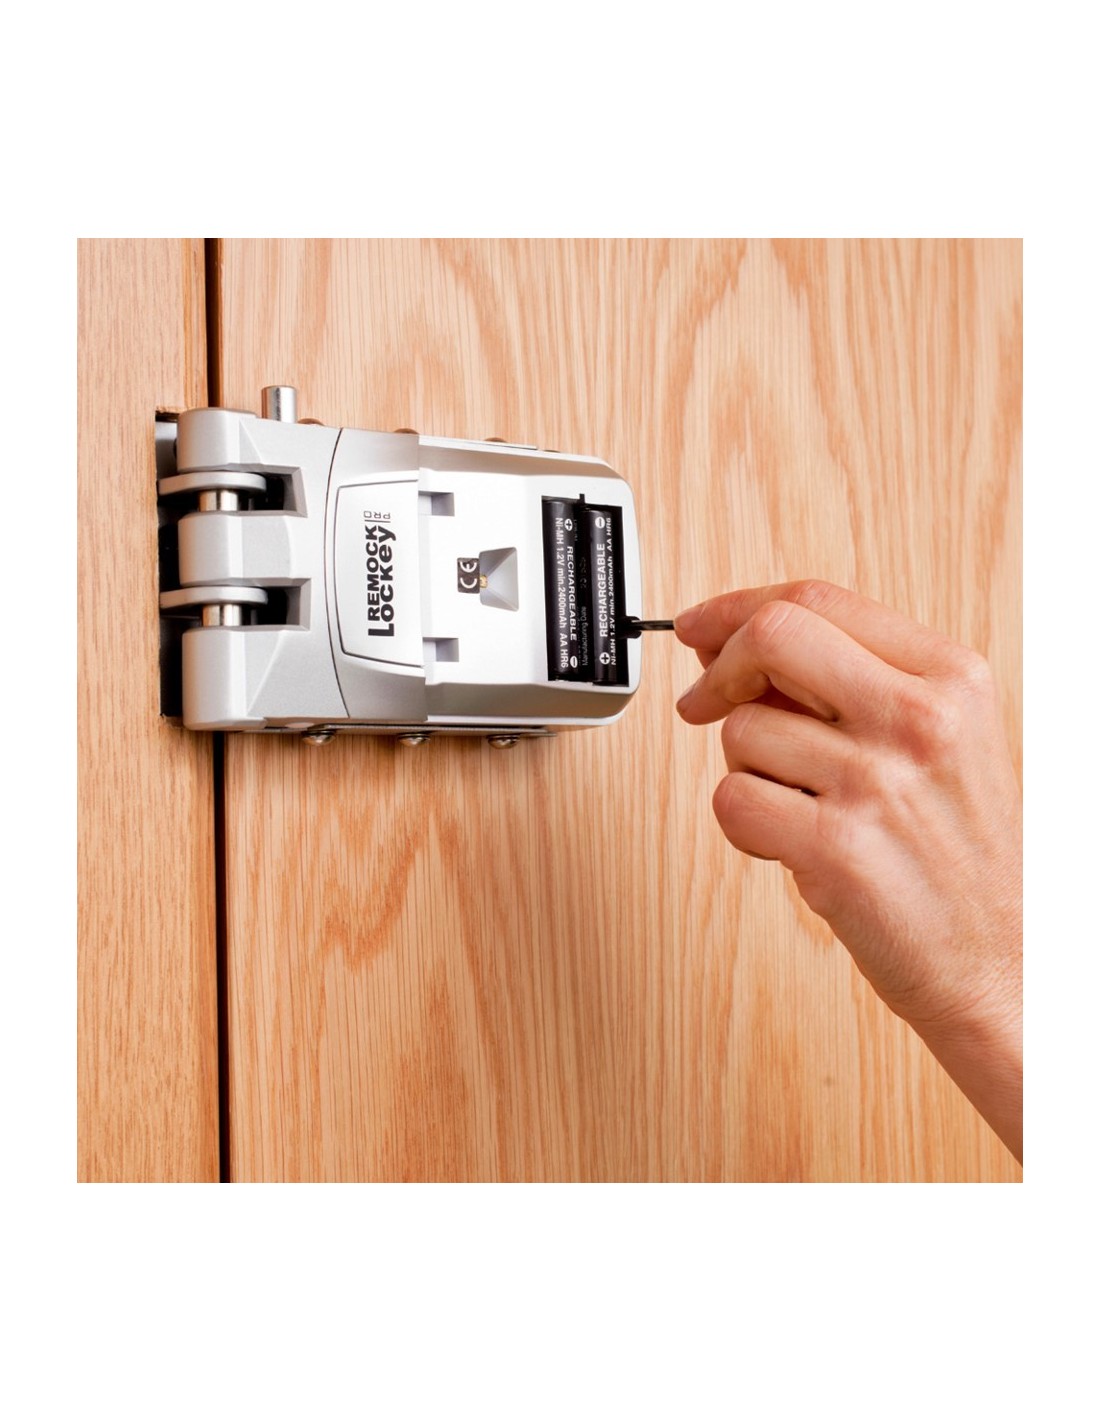 Cerradura Remock lockey electrónica- Cerradura invisible al mejor precio